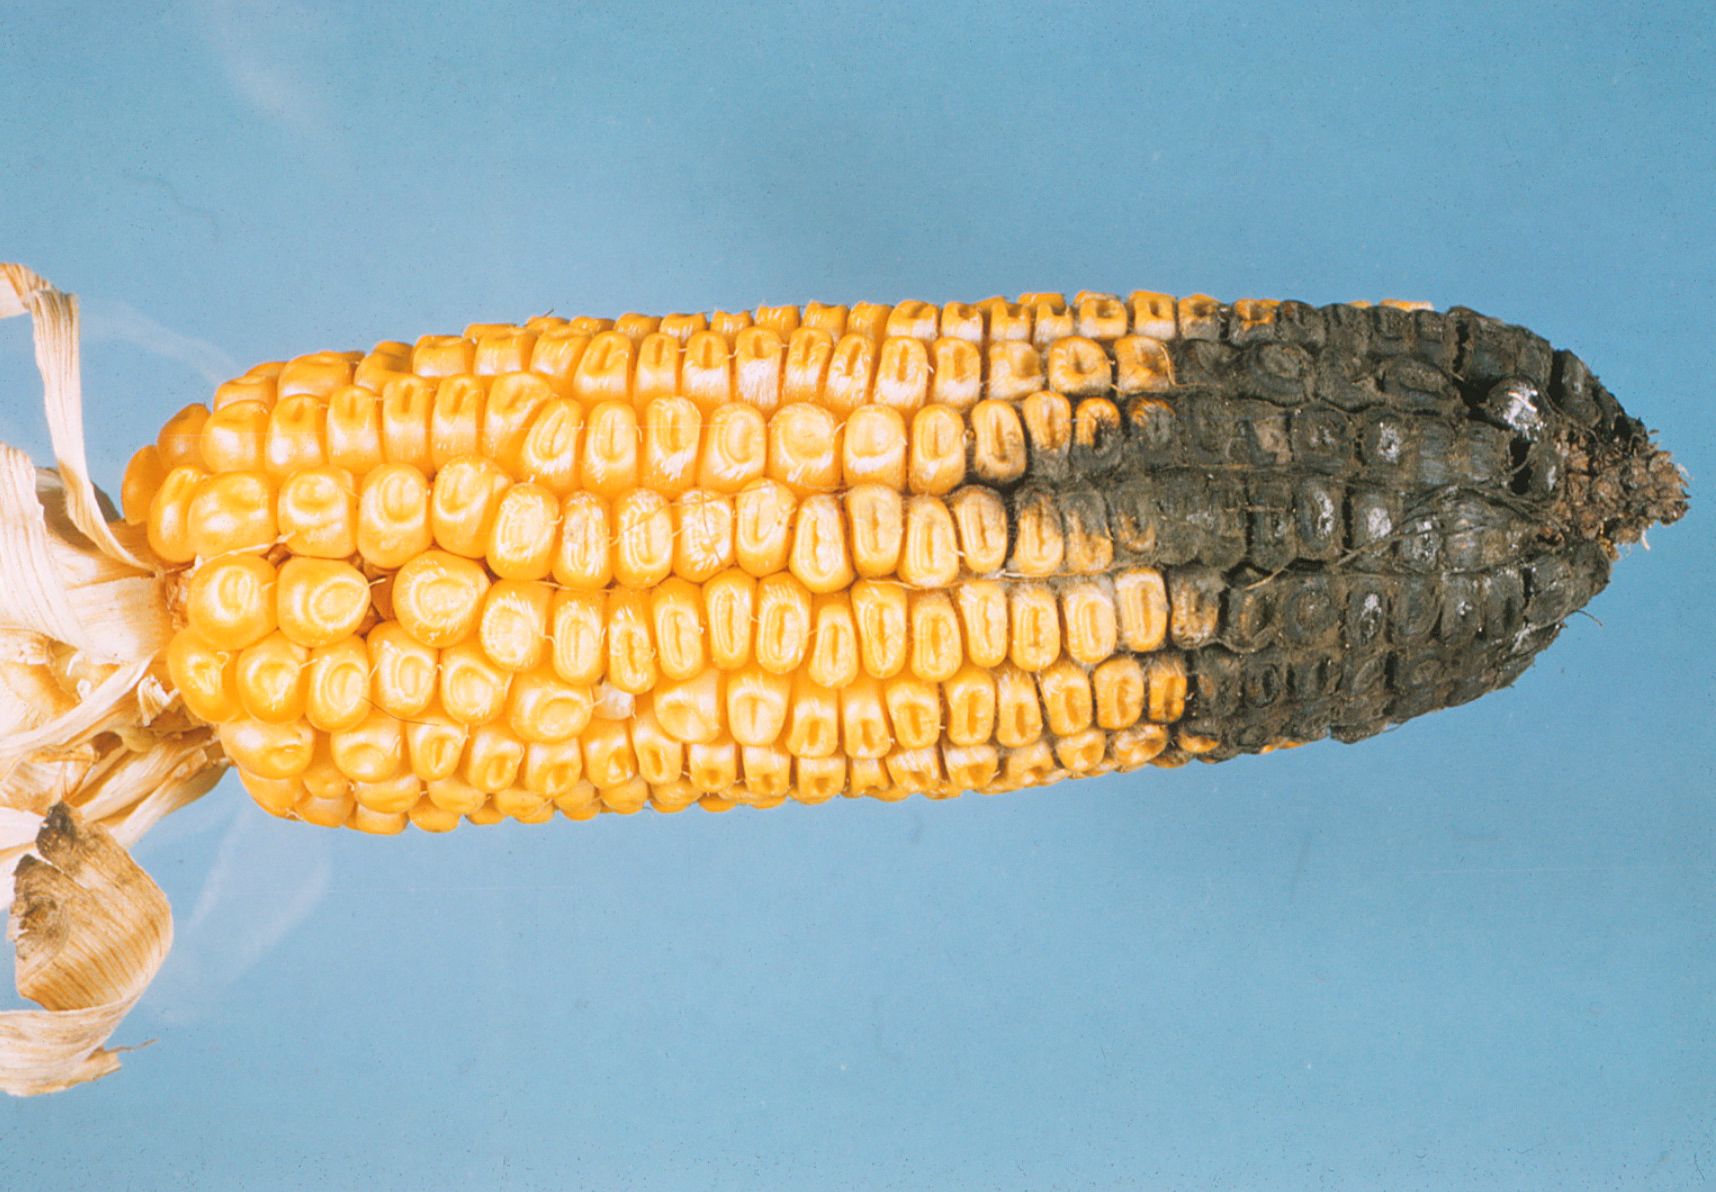 Northern corn leaf spot race 2 mold on kernels.